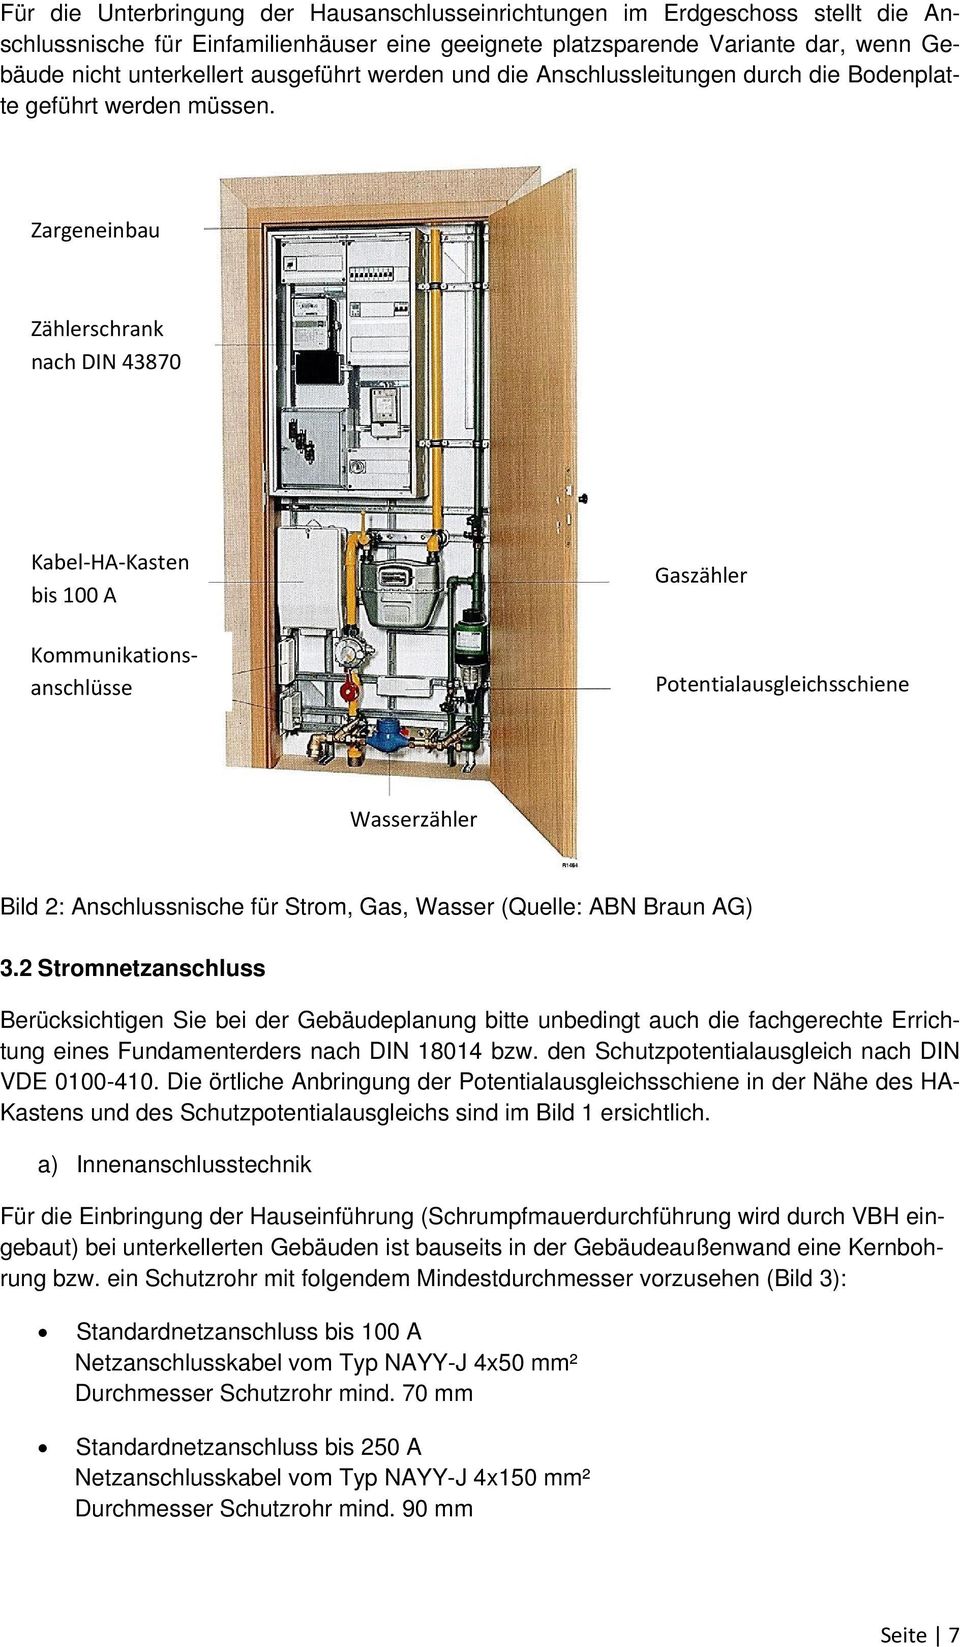 Zargeneinbau Zählerschrank nach DIN 43870 Kabel HA Kasten bis 100 A Kommunikationsanschlüsse Gaszähler Potentialausgleichsschiene Wasserzähler Bild 2: Anschlussnische für Strom, Gas, Wasser (Quelle: